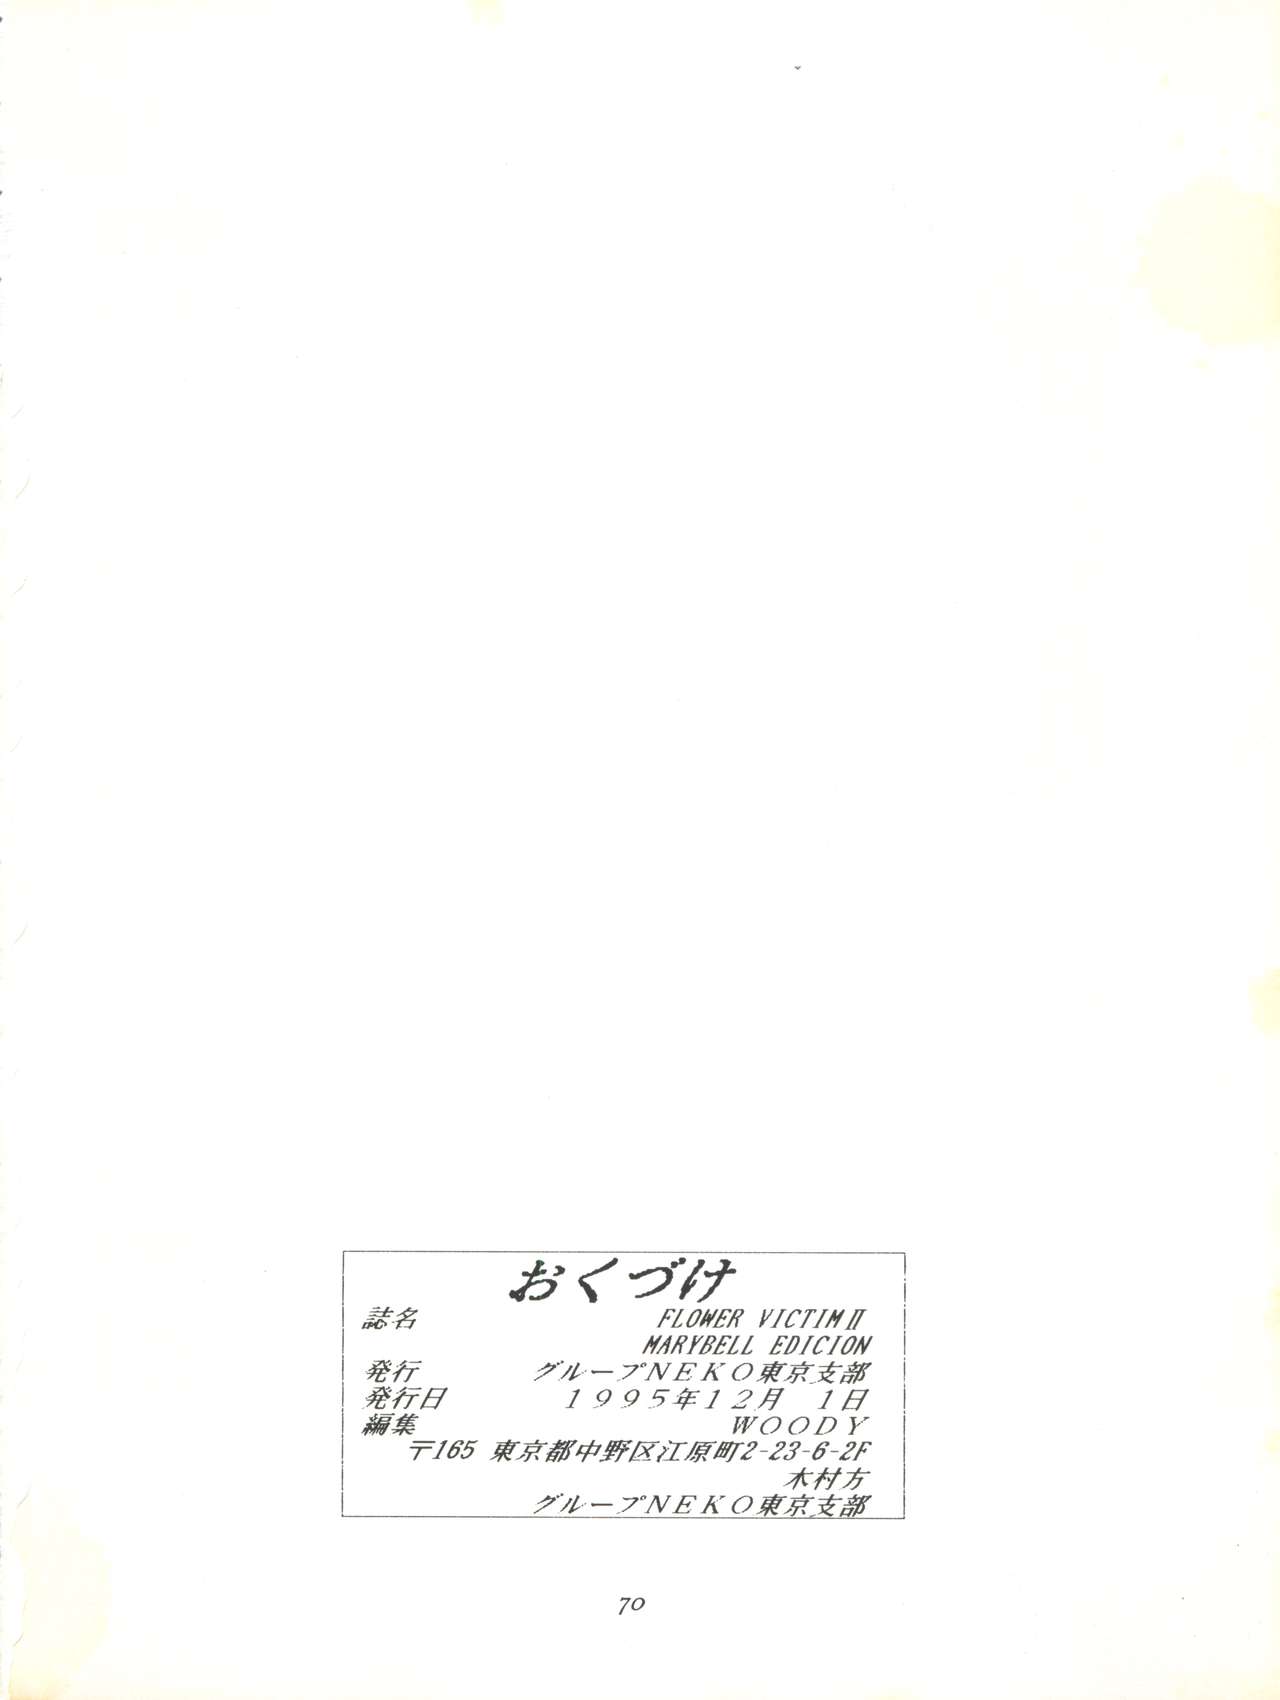 [グループNEKO東京支部 (WOODY)] FLOWER VICTIM II MARYBELL EDITION (花の魔法使いマリーベル)